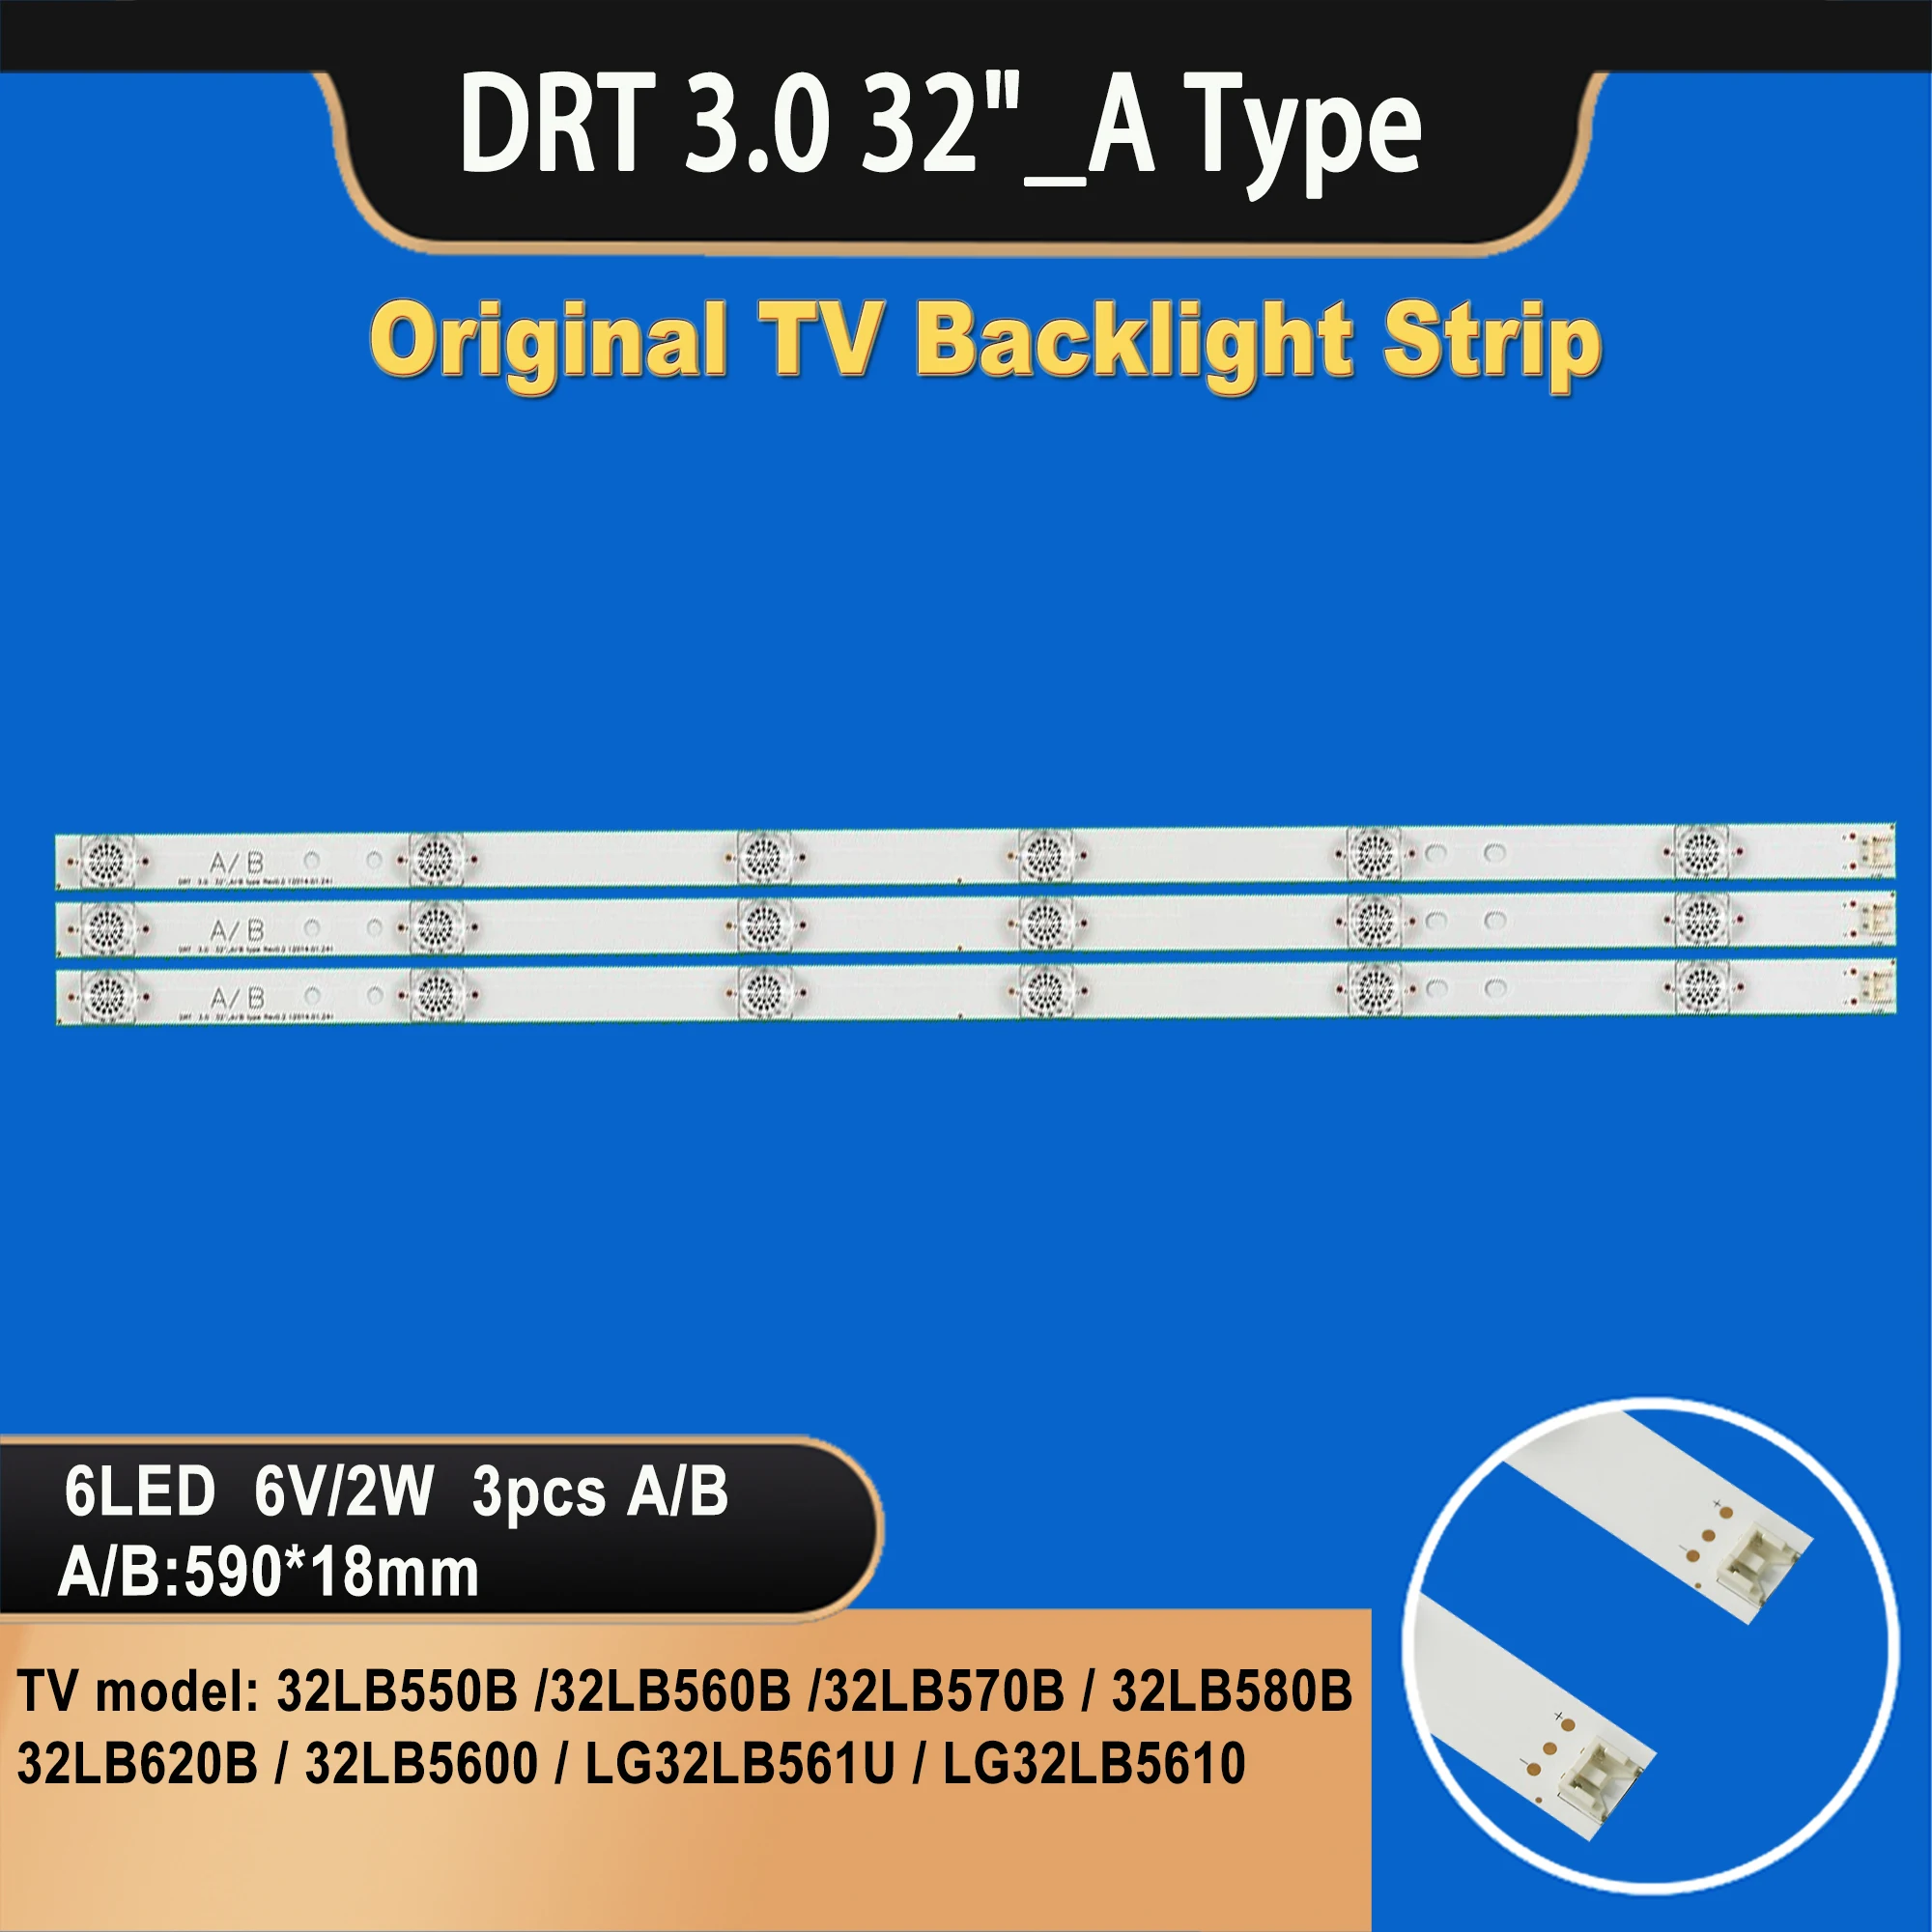 TV-047 32''lg lb quadratische Linse TV Hintergrund beleuchtung Bar 6 LED 6V Innotek Drt 3,0 32 \ "_ ein Typ Rev 0,2 6916l-2223a für TV-Reparatur